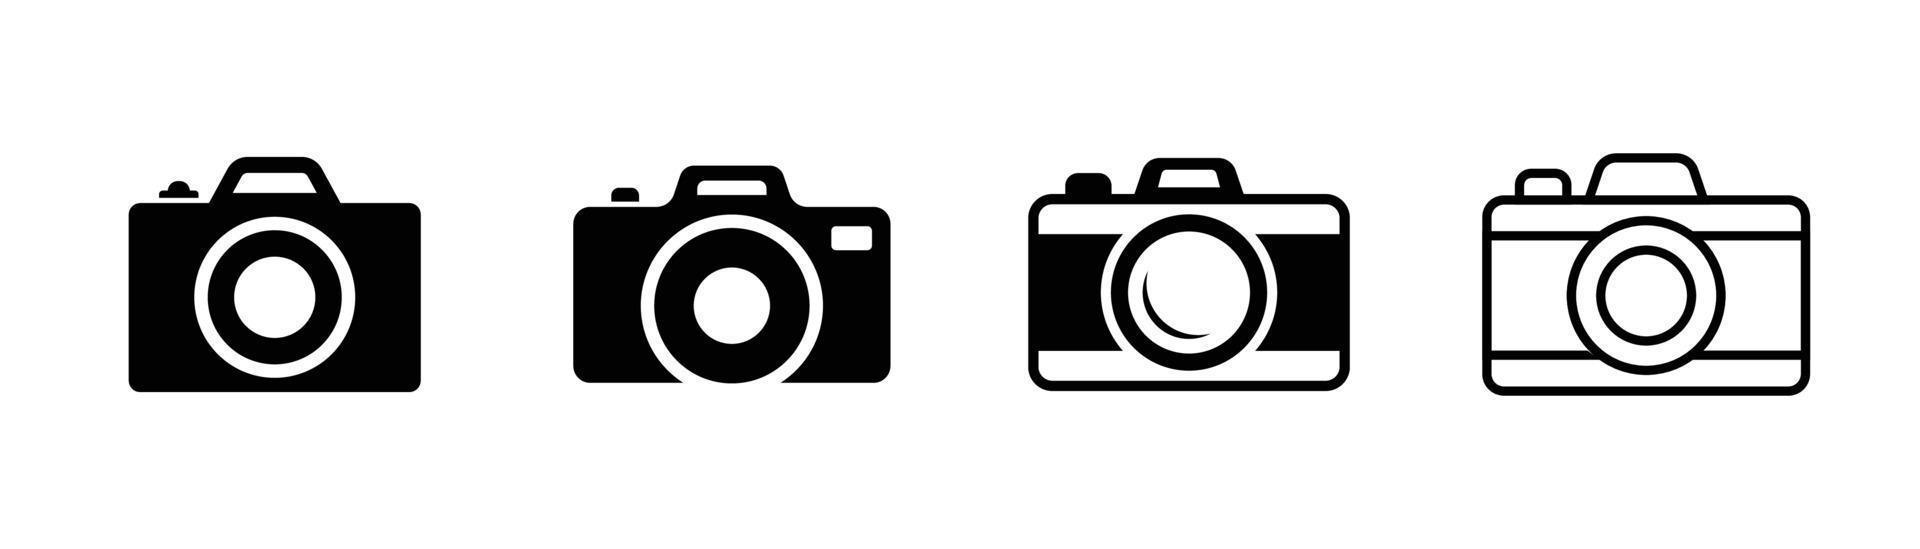 elemento de diseño de icono de cámara adecuado para sitio web, diseño de impresión o aplicación vector